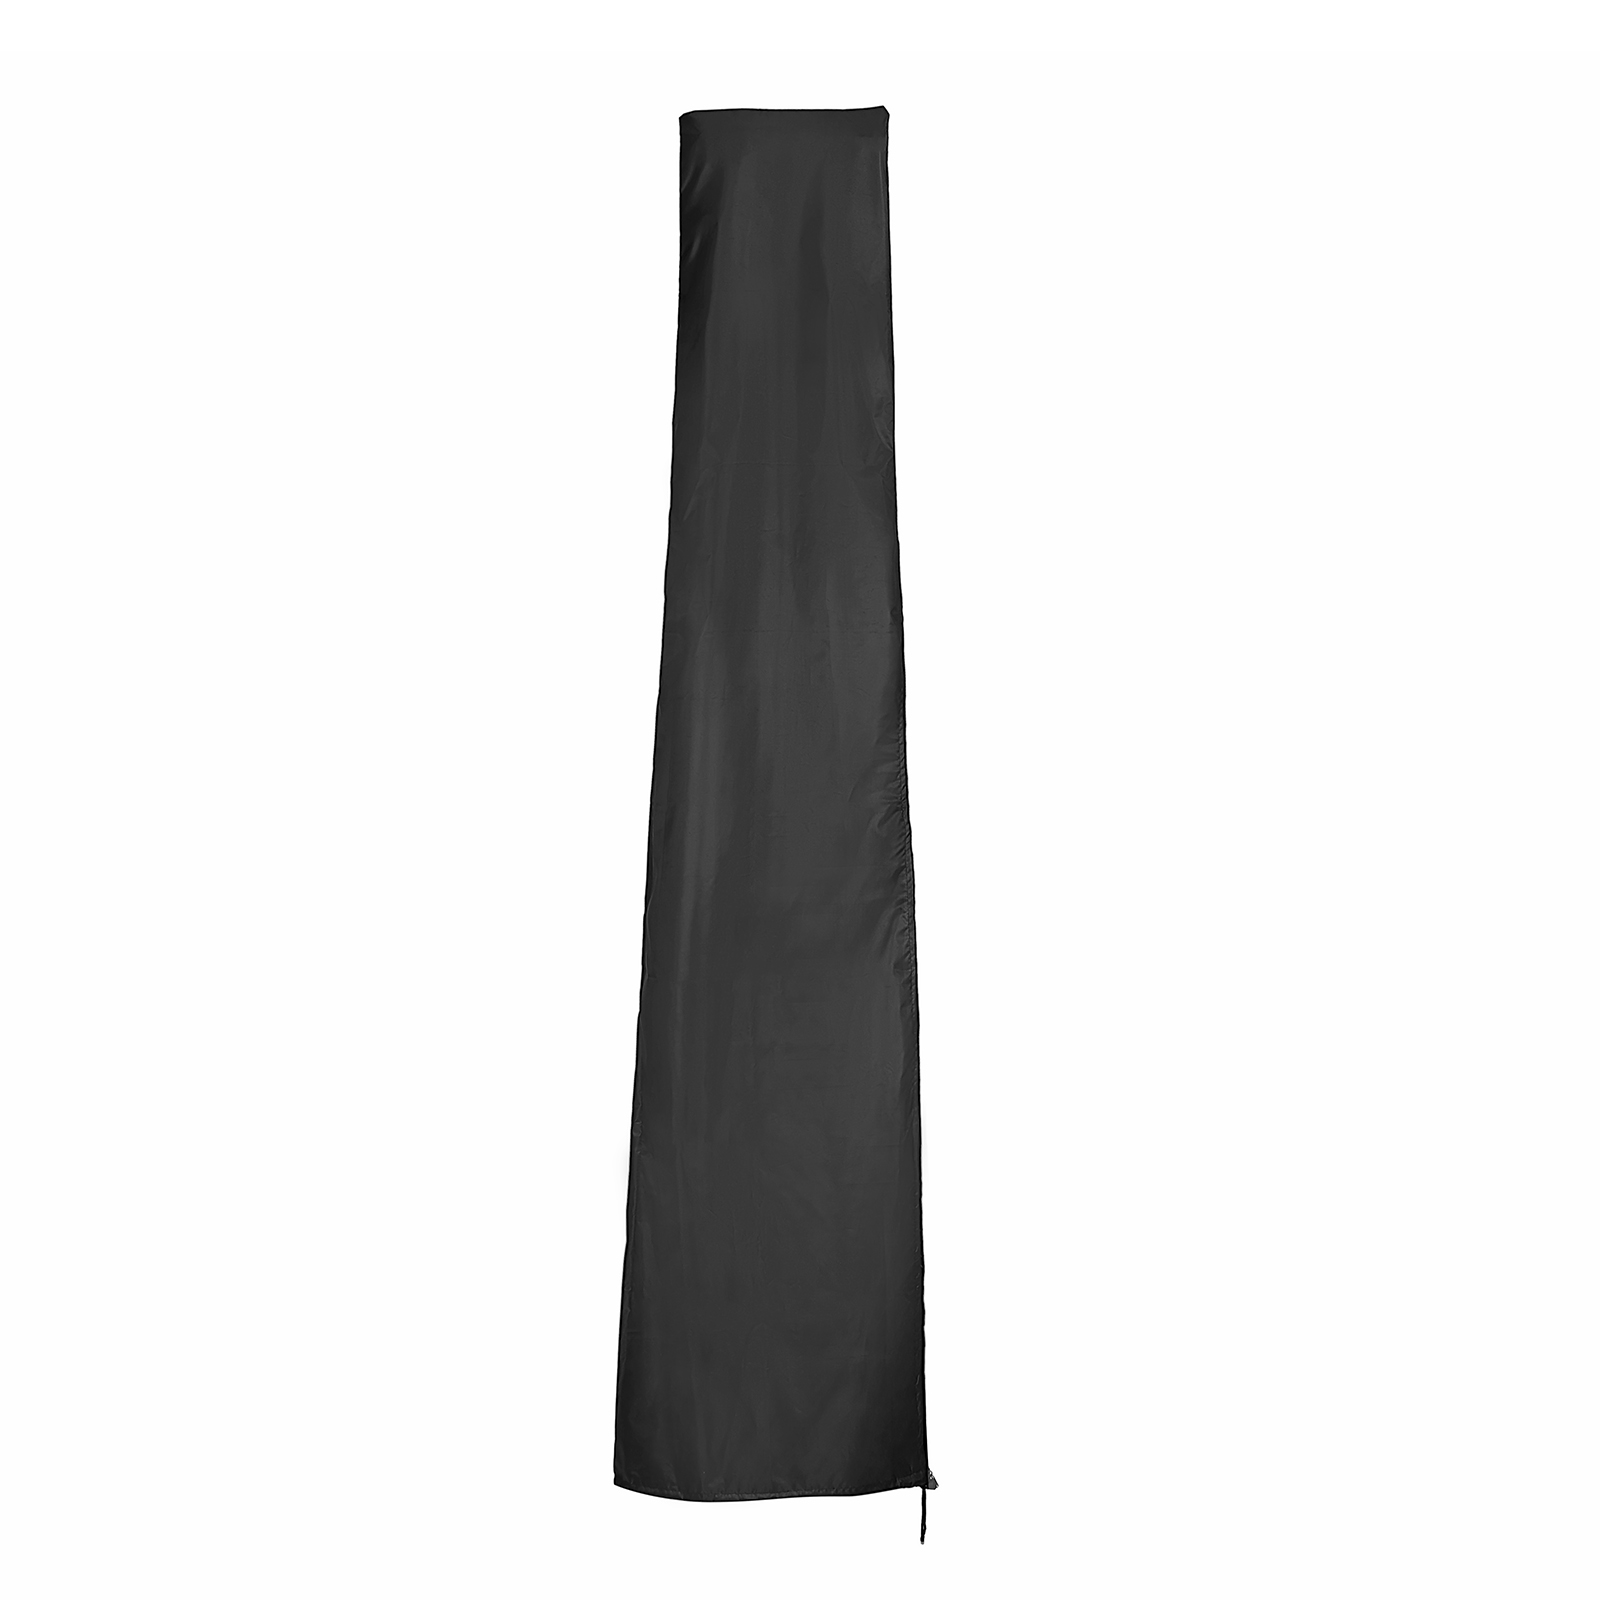 600D-Nylon-Oxford-Cloth-T-Shaped-Umbrella-Cover-Wind-resistant-Anti-UV-Umbrella-Cover-1885729-11